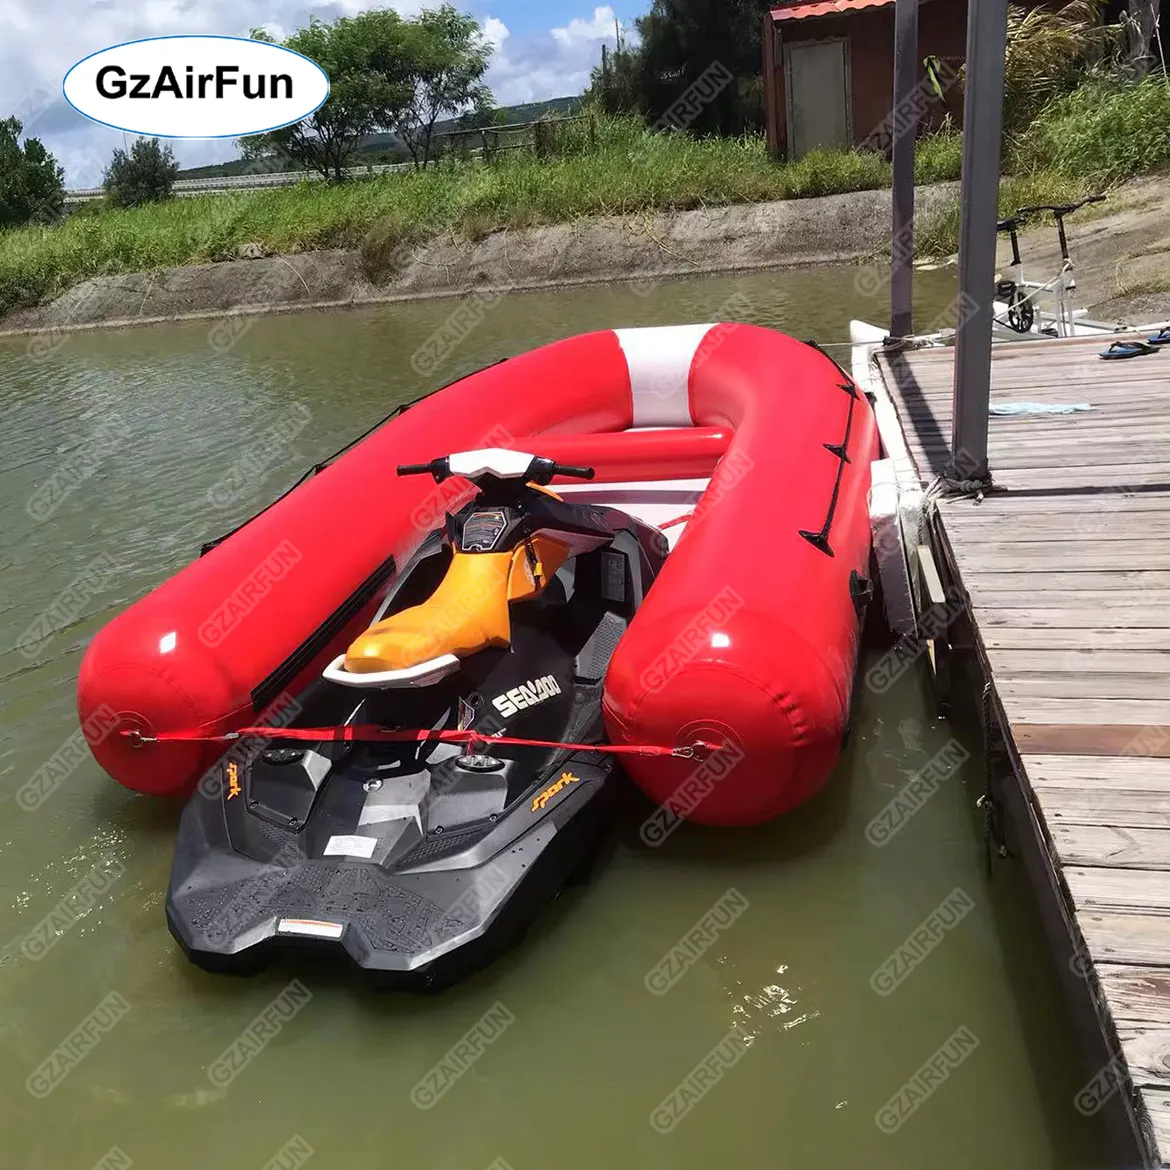 Nouveau design de bateau jetski, jet ski motorisé gonflable, mélange un jet ski avec un bateau gonflable pour les voyages sur l'eau